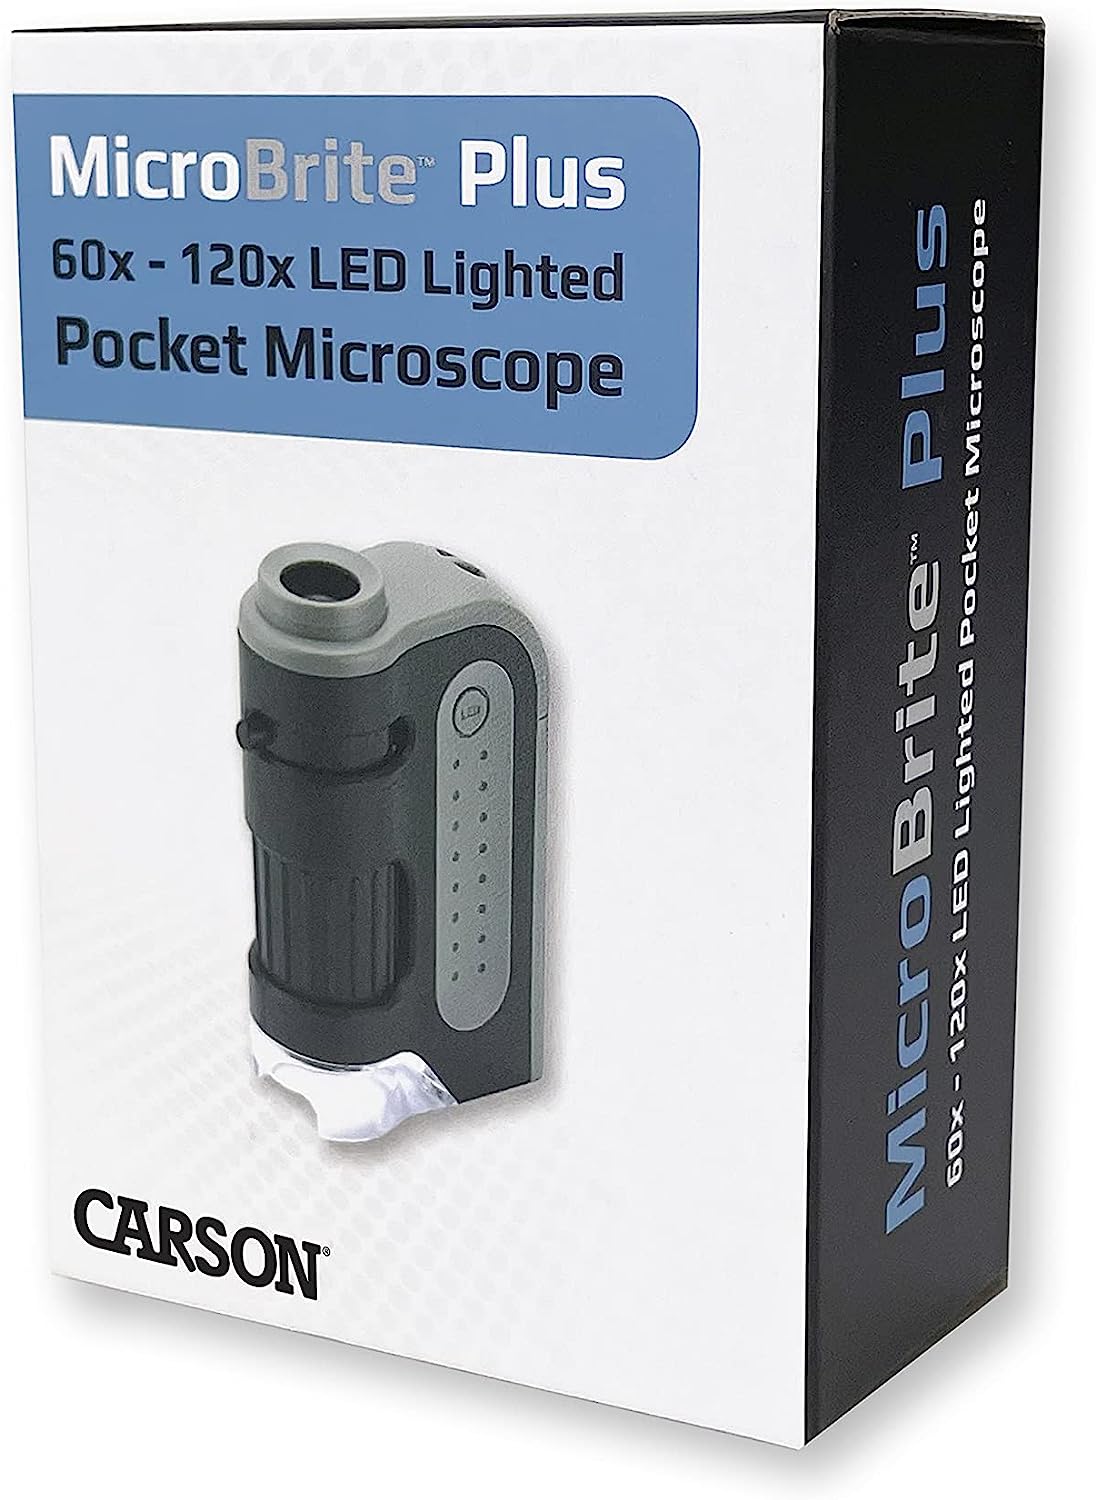 Le top du microscope de poche lumineux - idéal pour smartphones ou